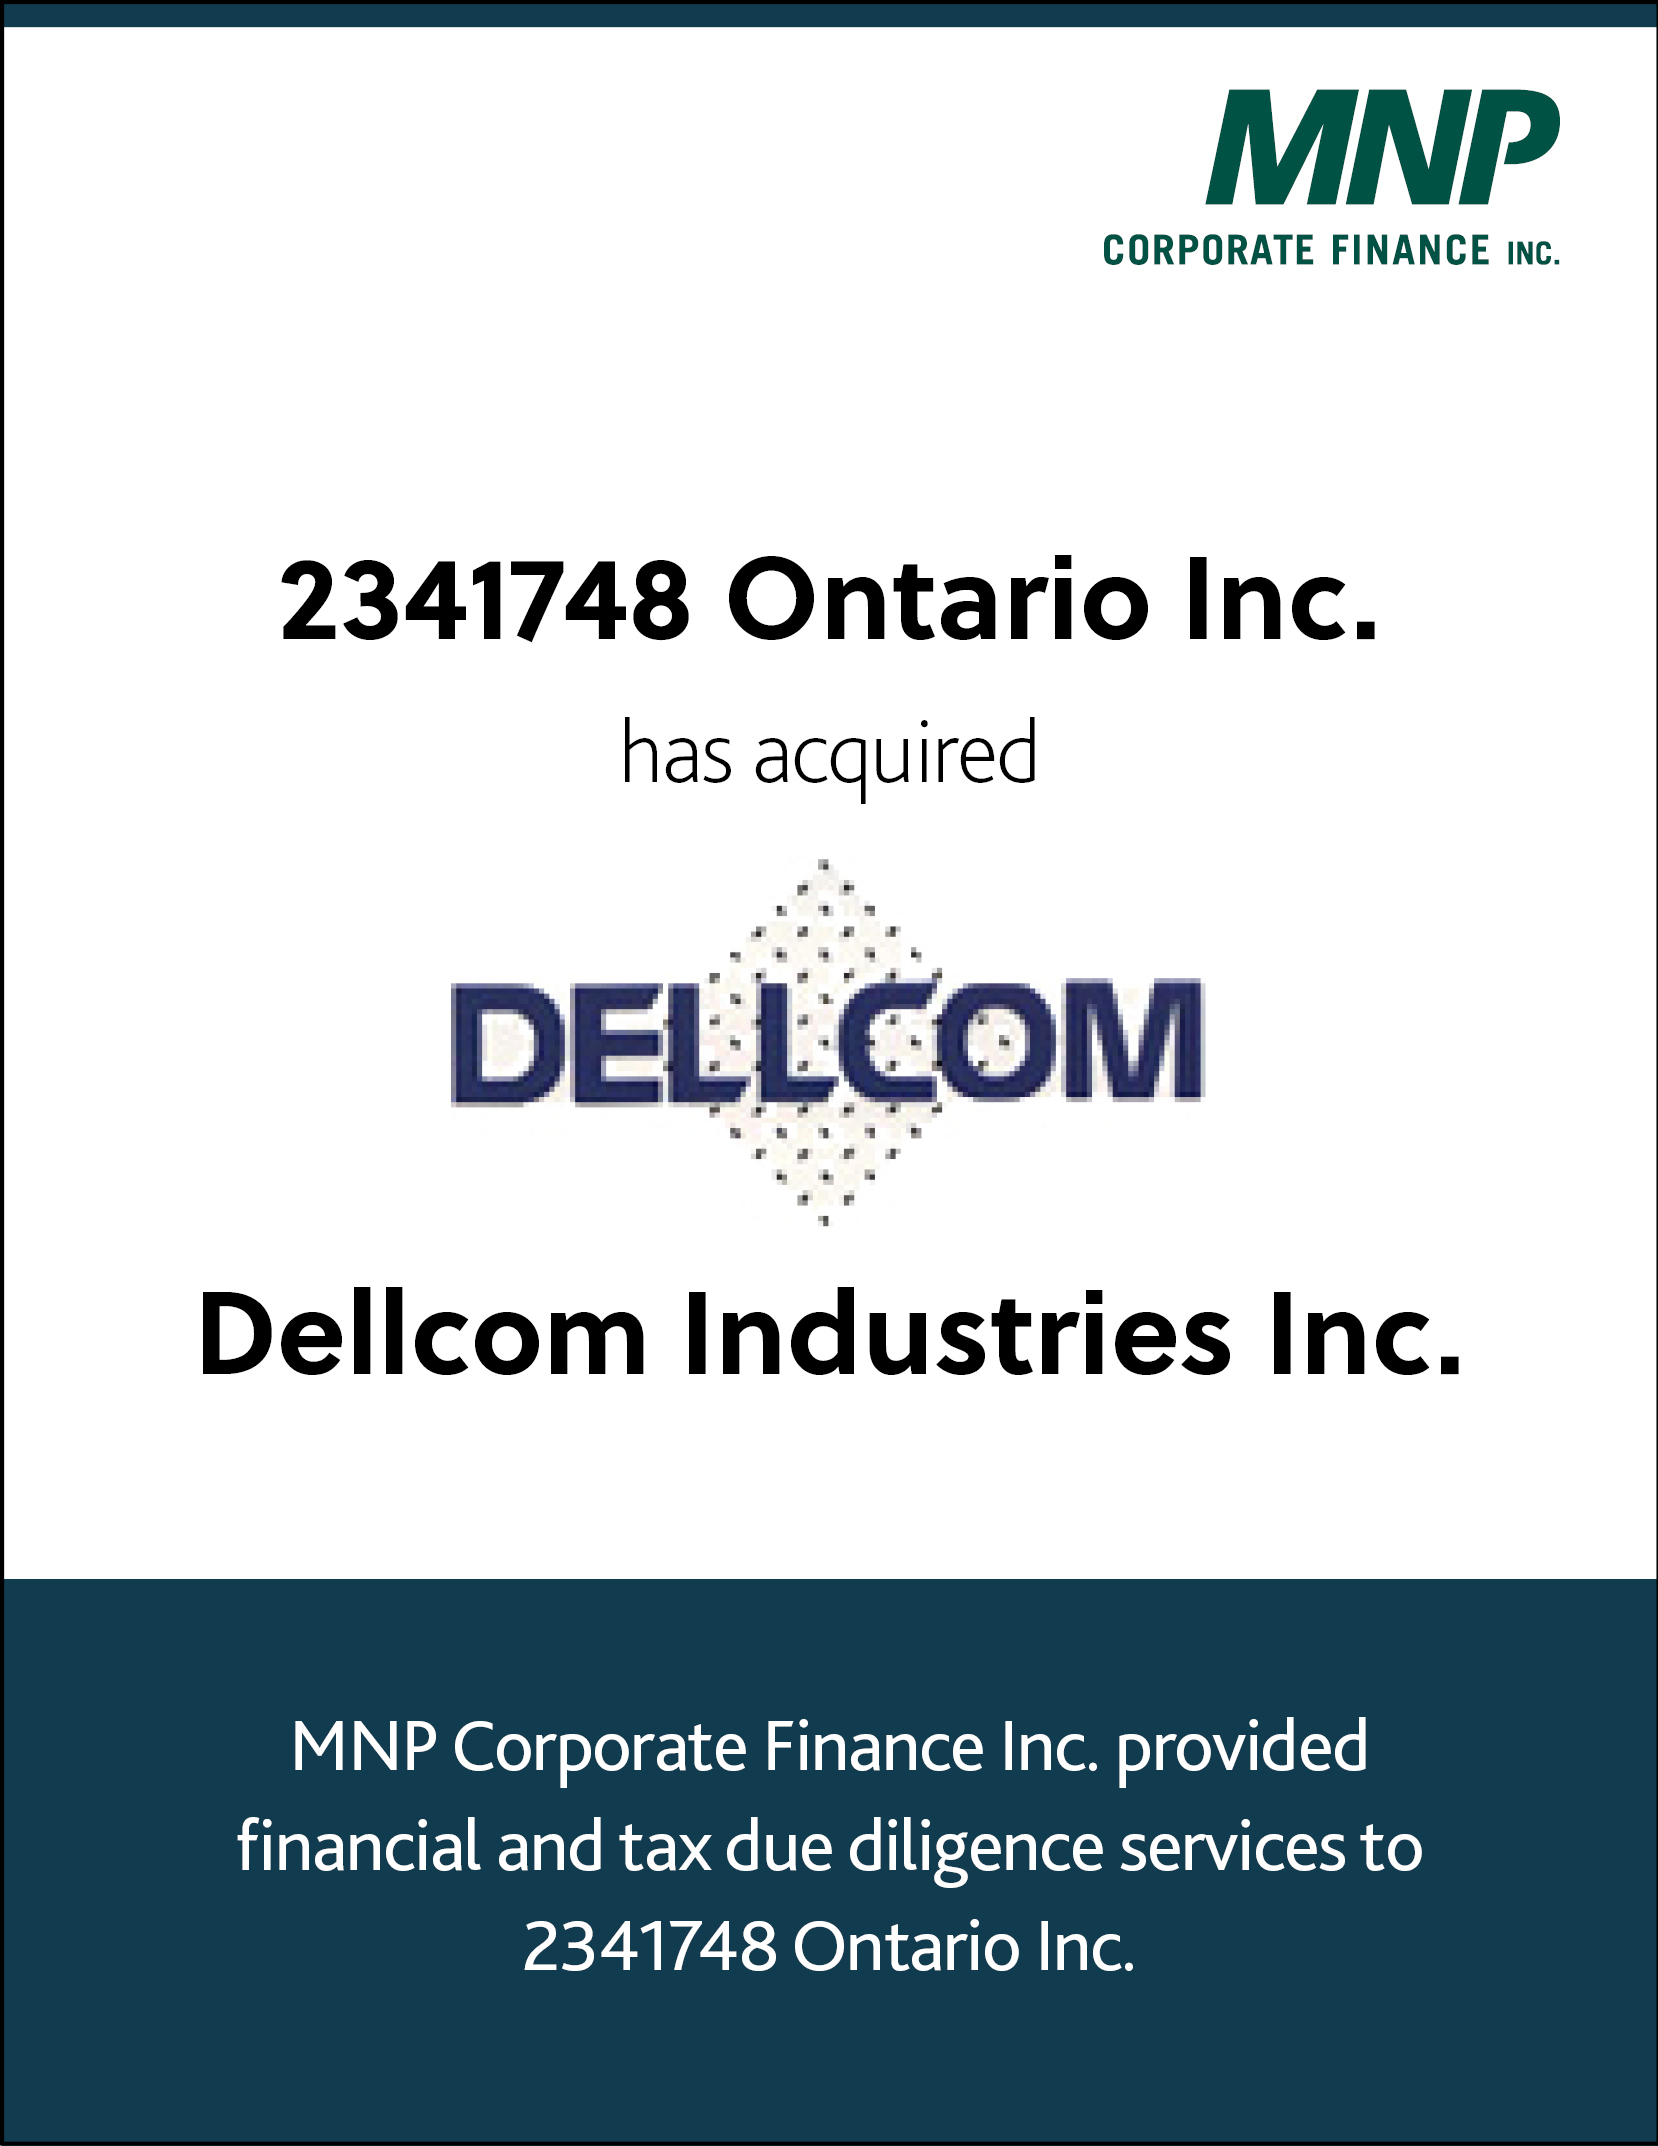 2341748 Ontario Inc has acquired Dellcom Industries Inc.